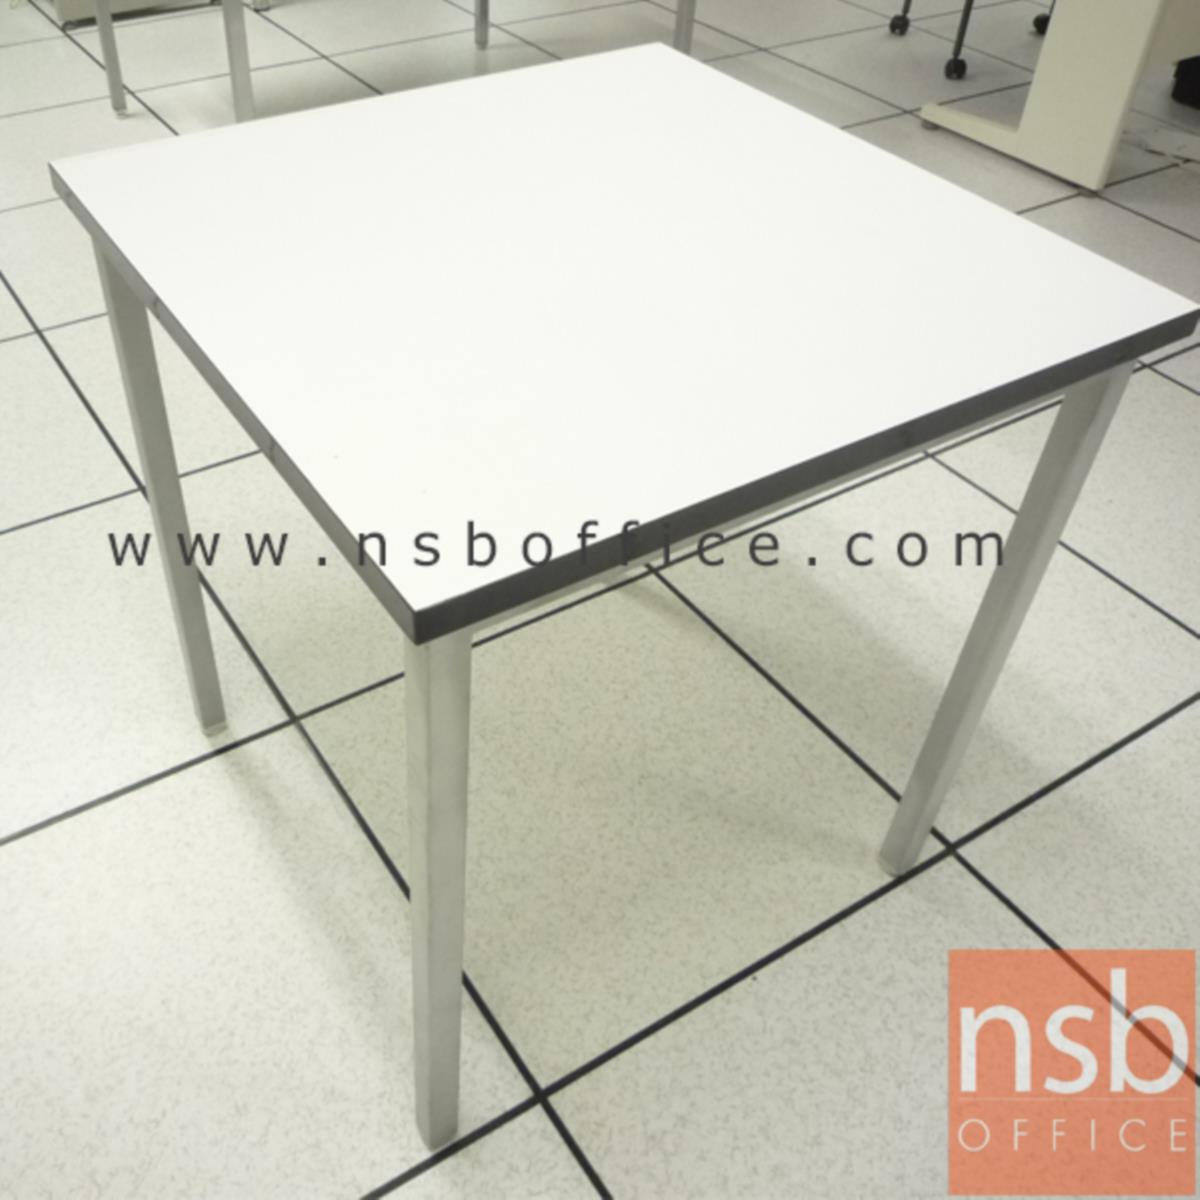 โต๊ะประชุมหน้าโฟเมก้าขาว รุ่น Bradlee (แบรดลีย์) ขนาด 75W cm.   ขาเหล็กชุบโครเมียมมีจุกรองยาง